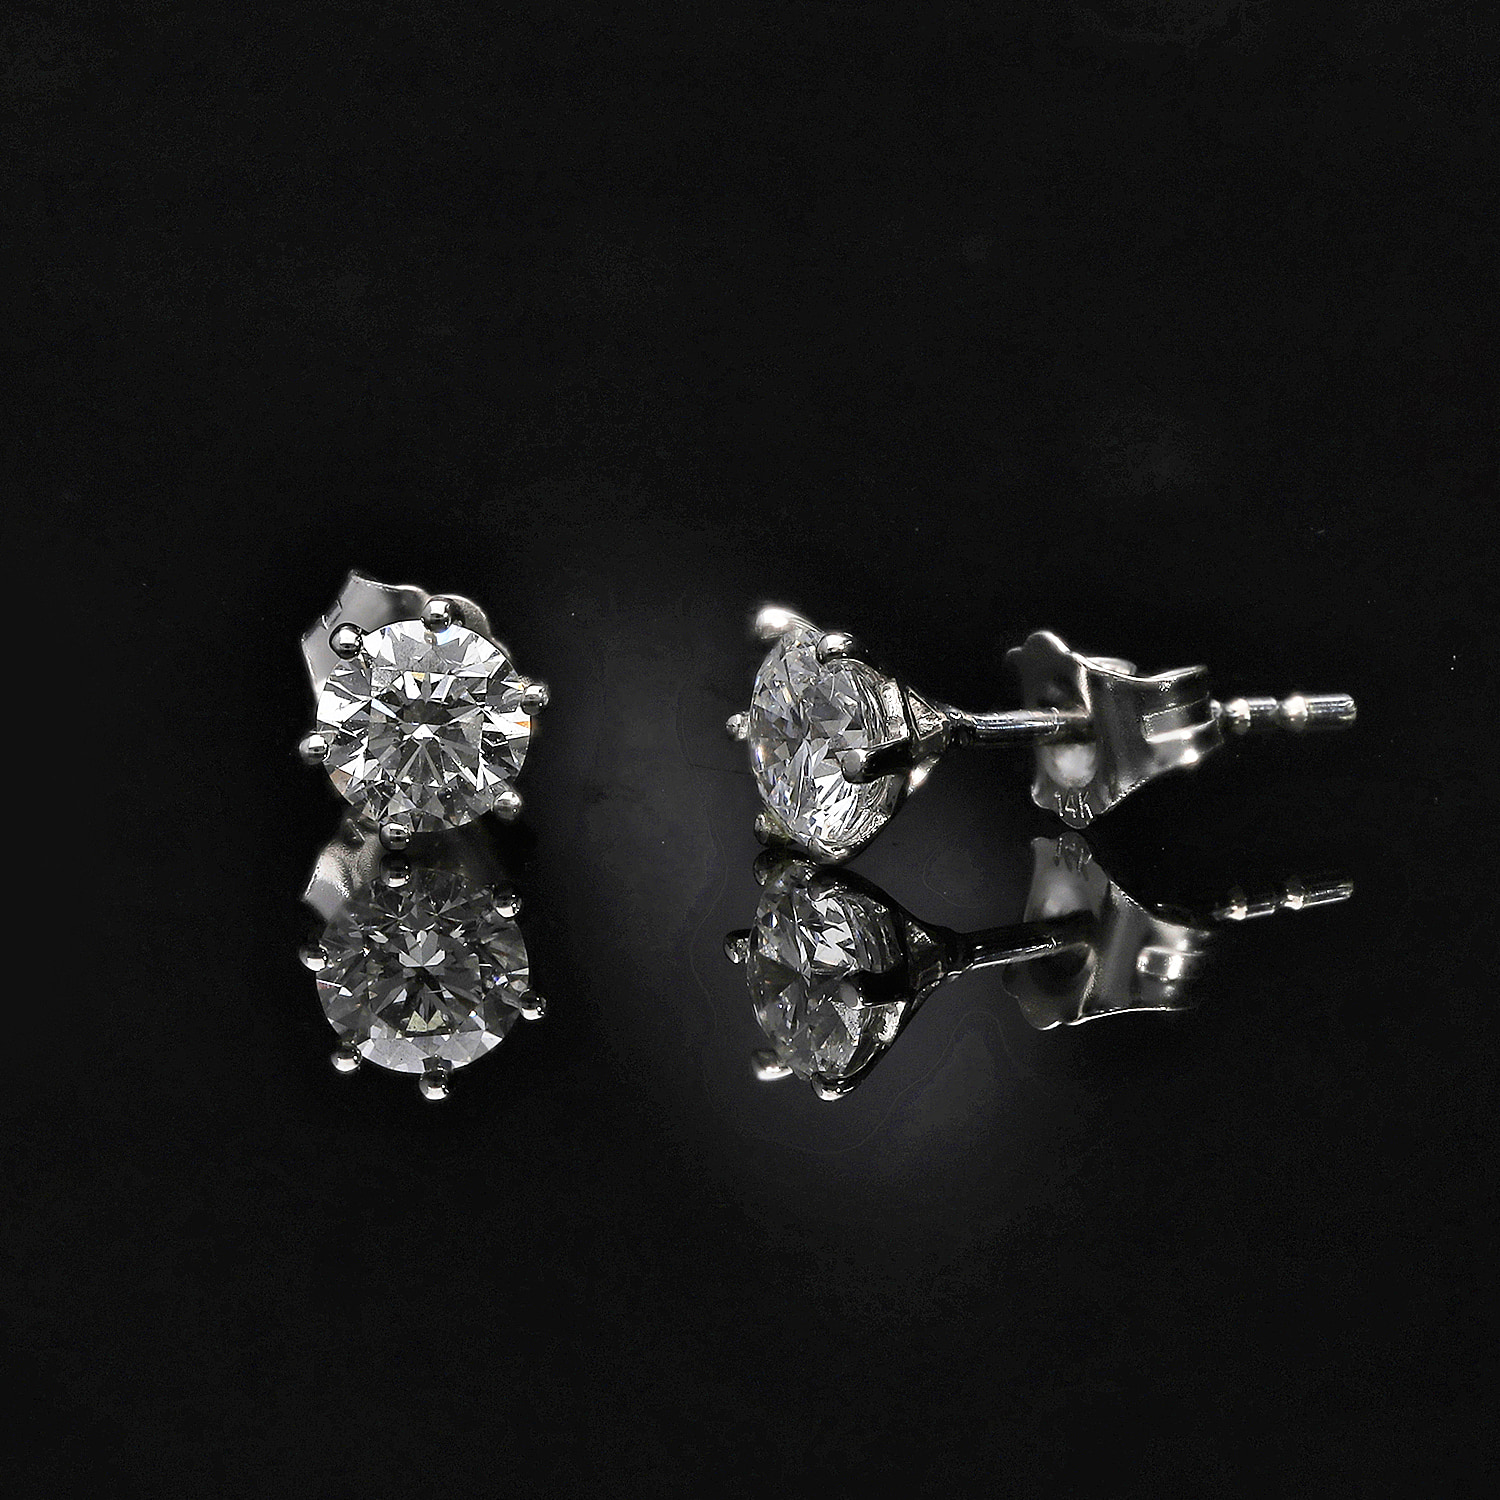 Diamond Earrings for Women Online in UK - Shop Now